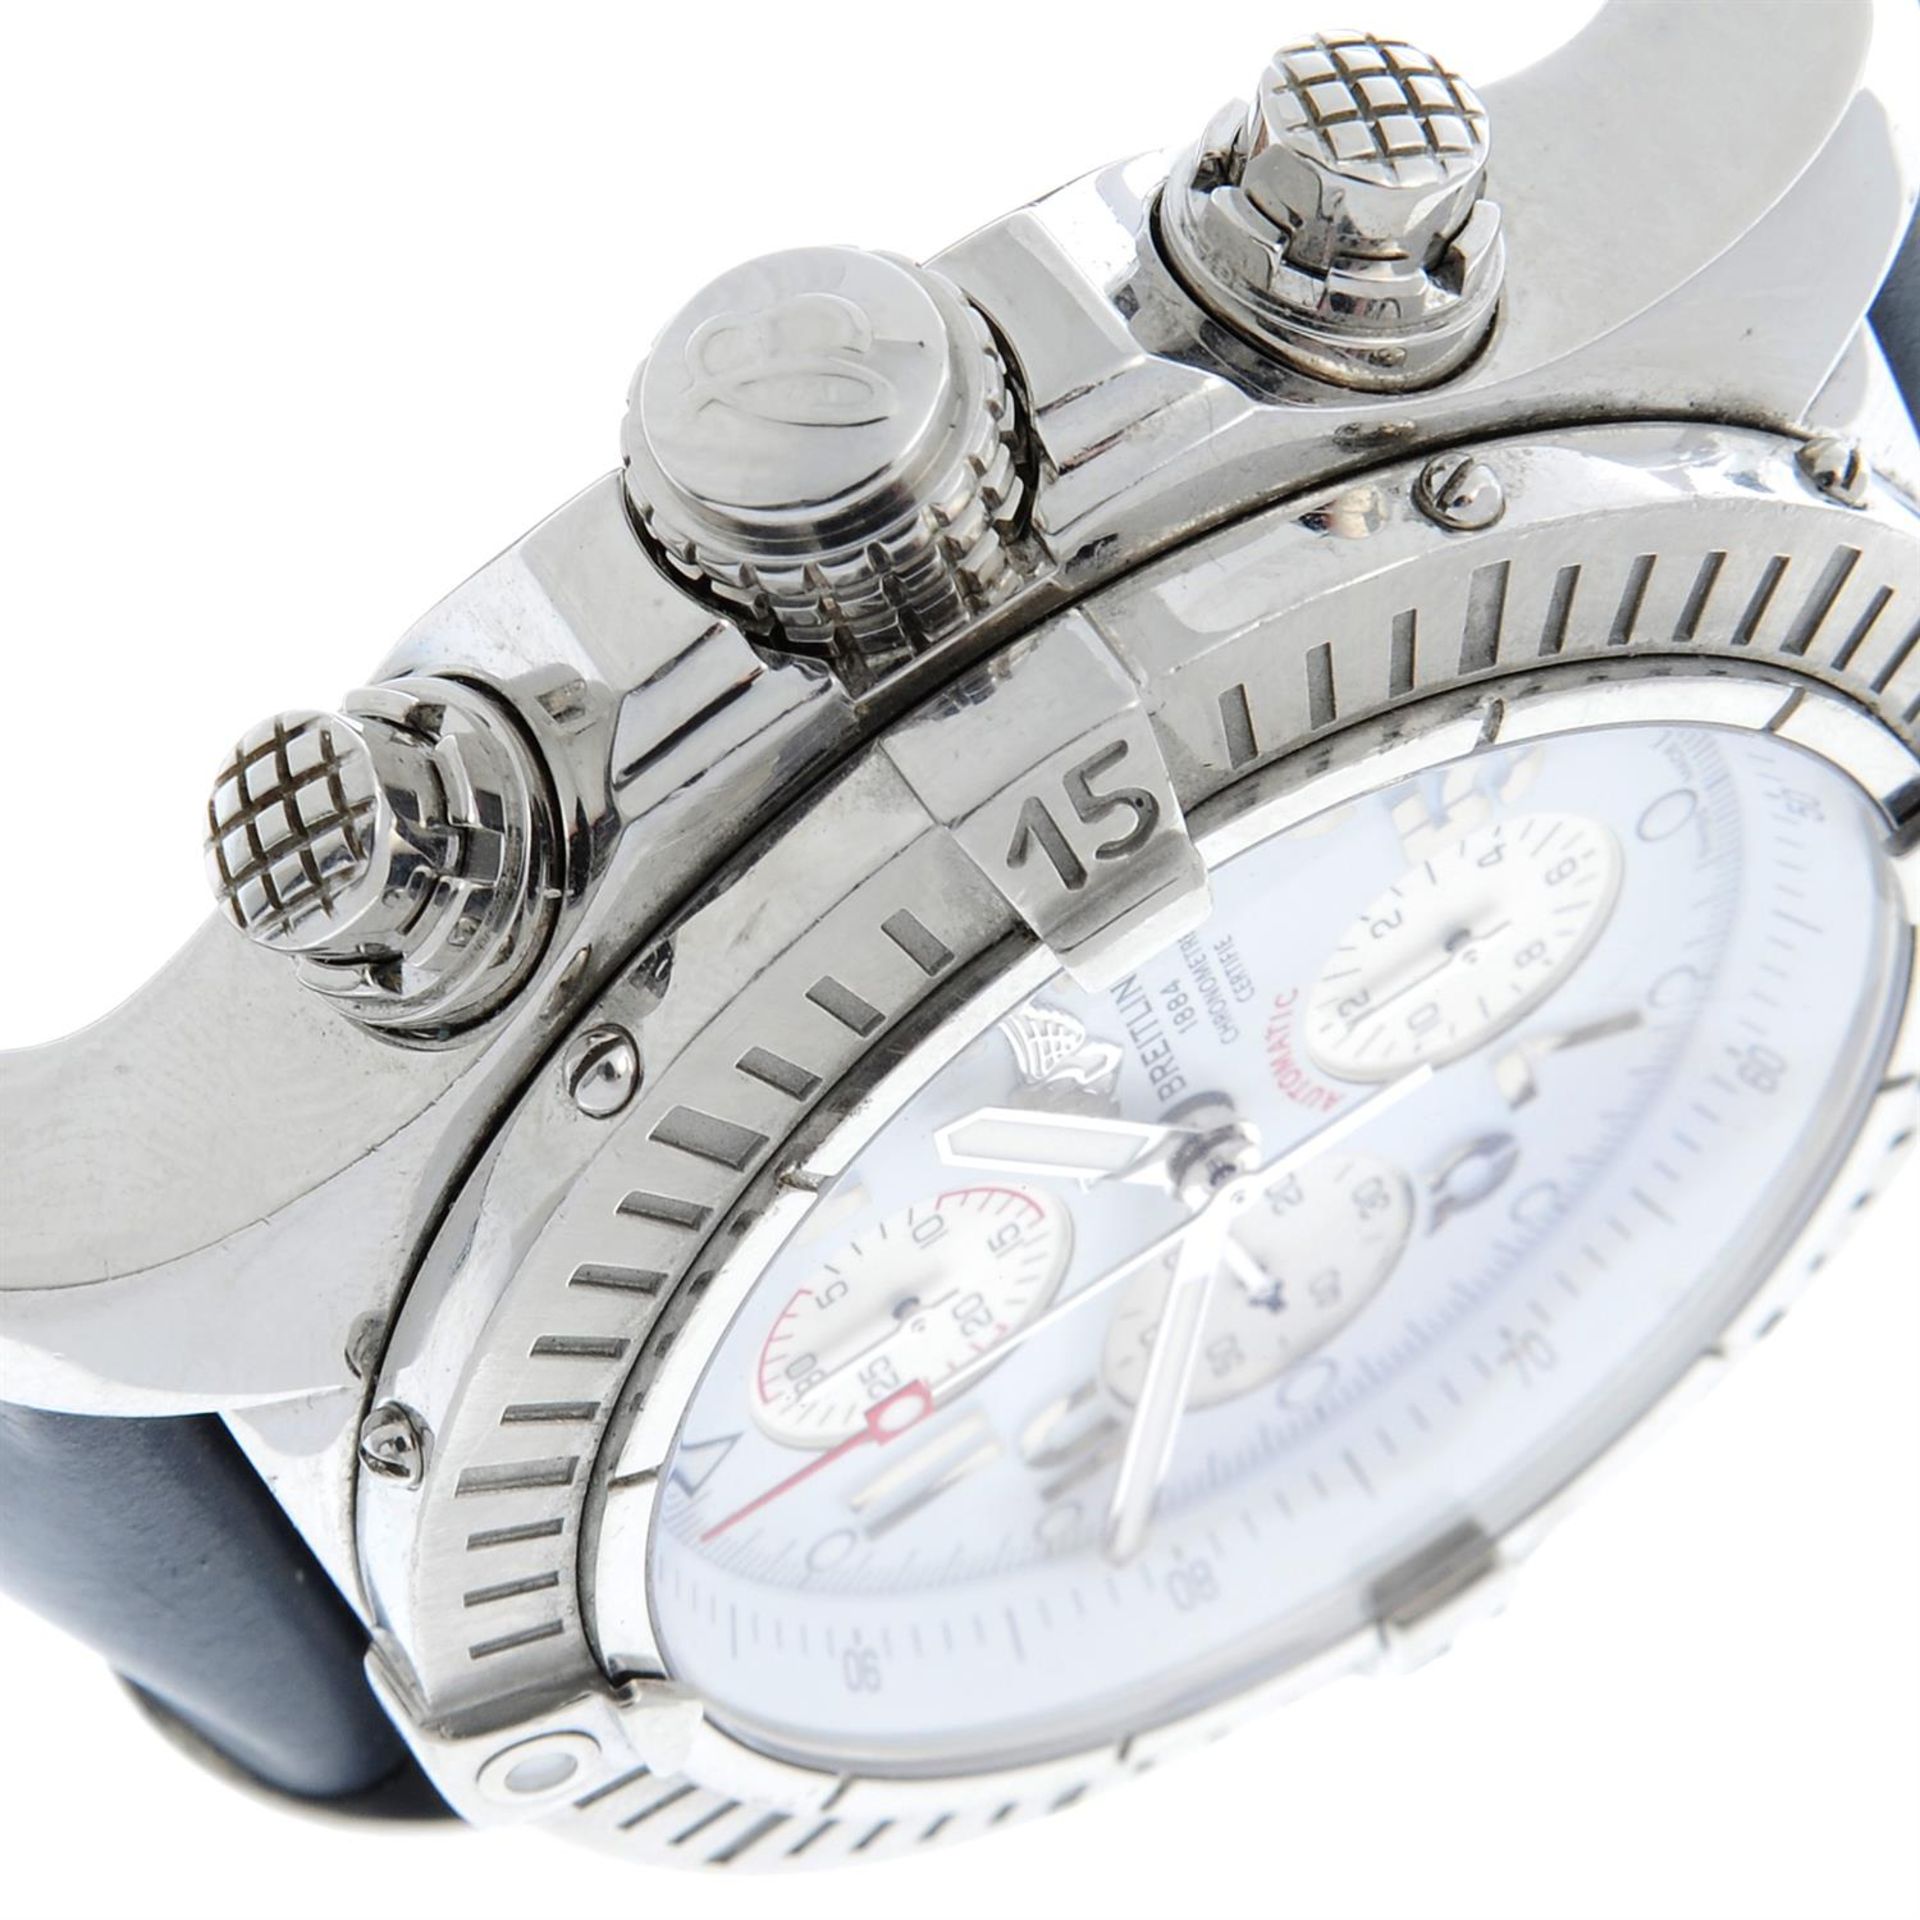 Breitling - a Super Avenger chronograph watch, 48mm. - Bild 3 aus 7